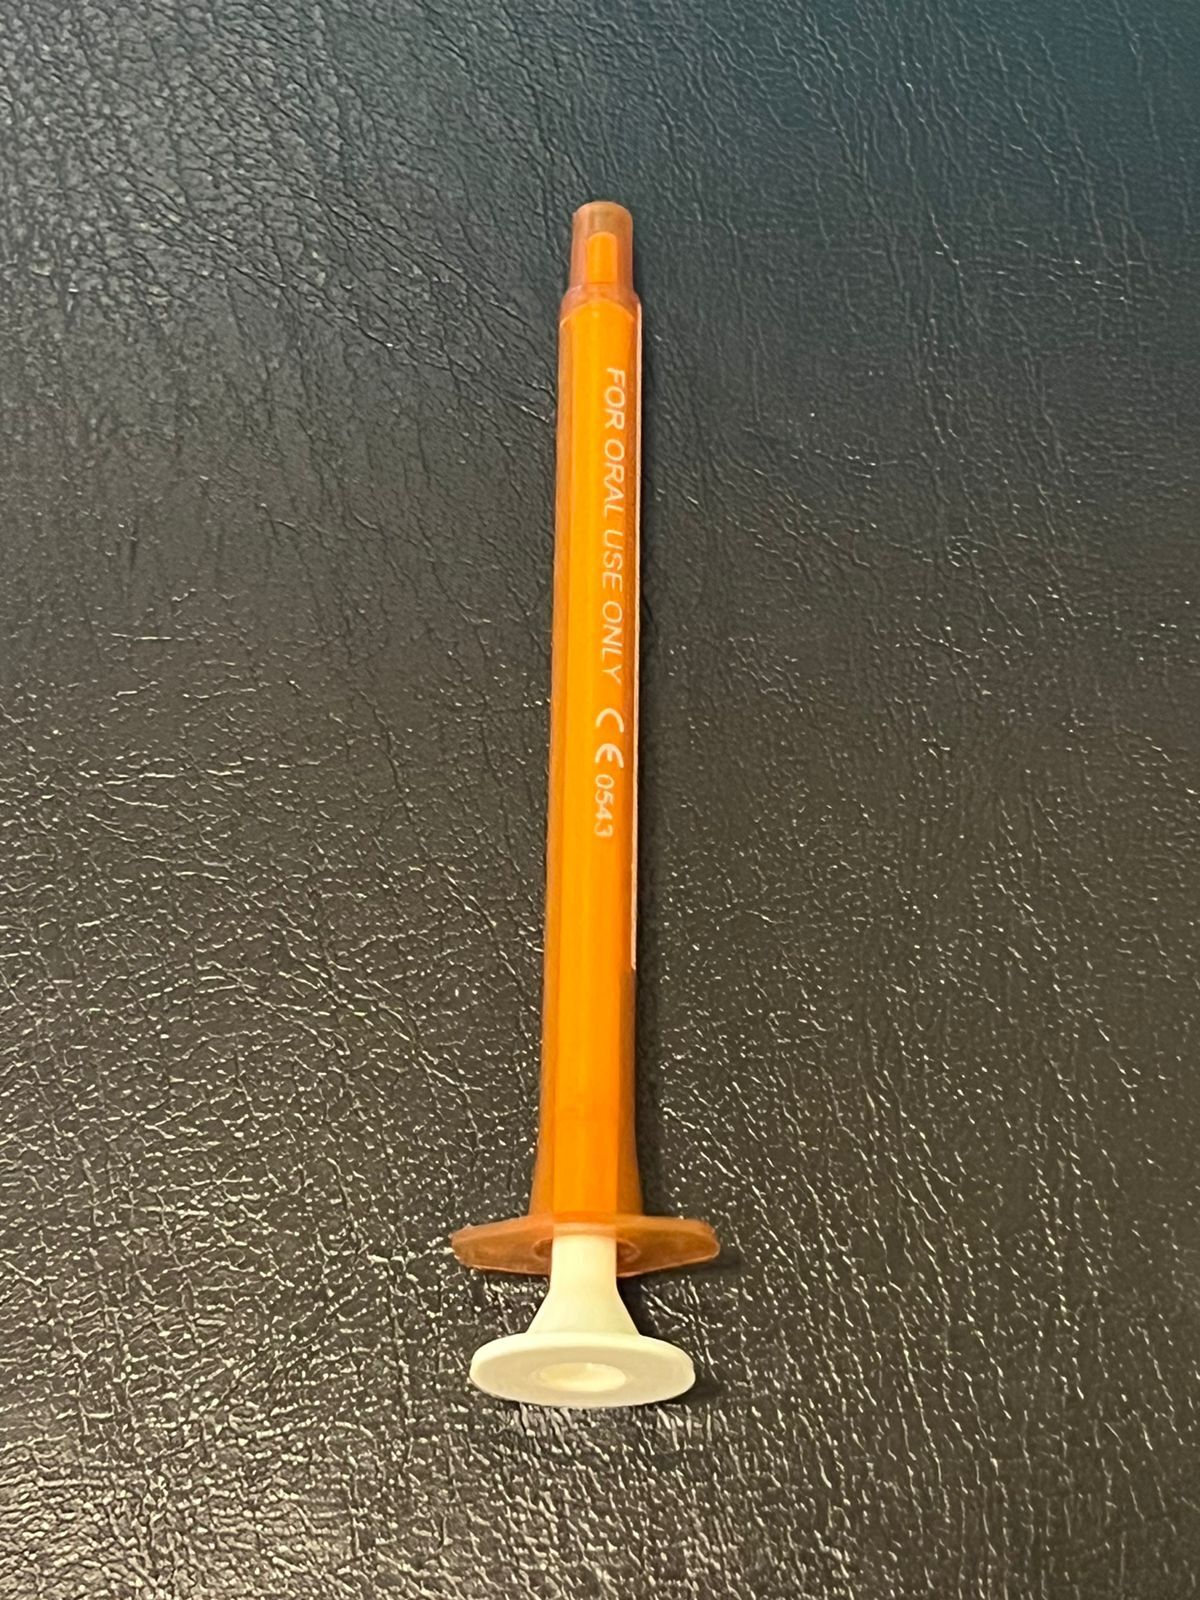 1ml Oral Syringe